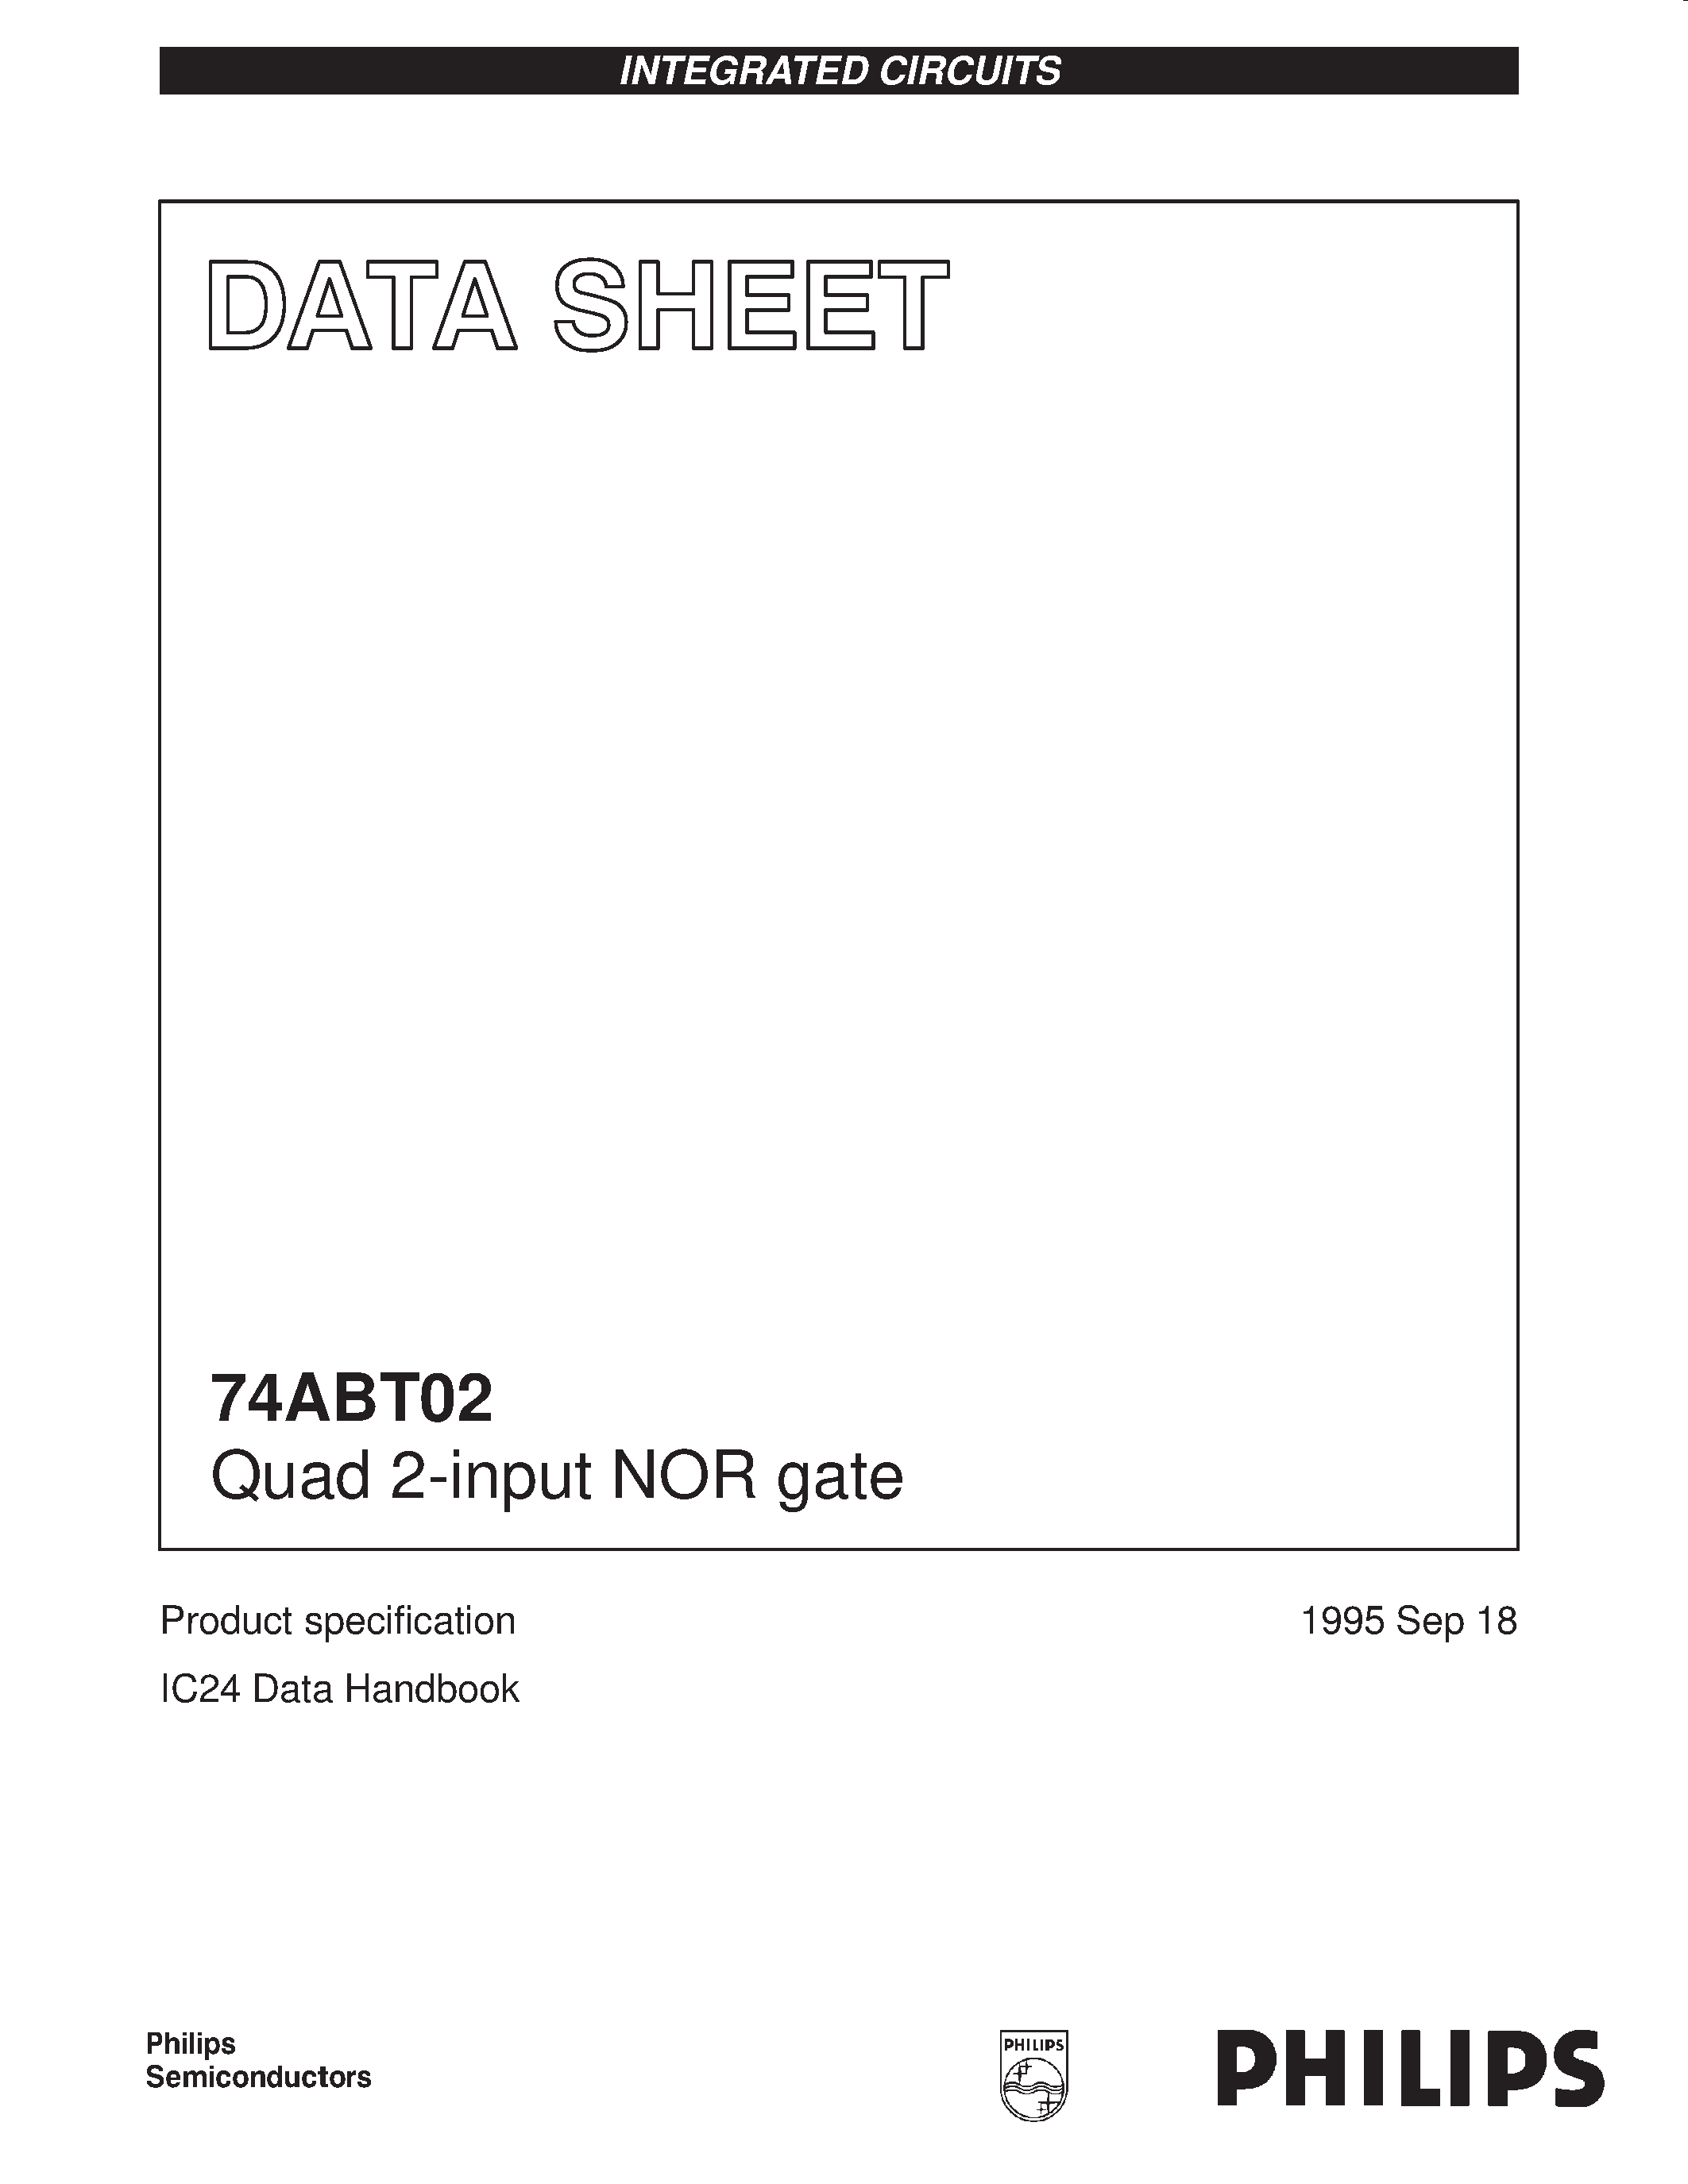 Даташит 74ABT02D - Quad 2-input NOR gate страница 1